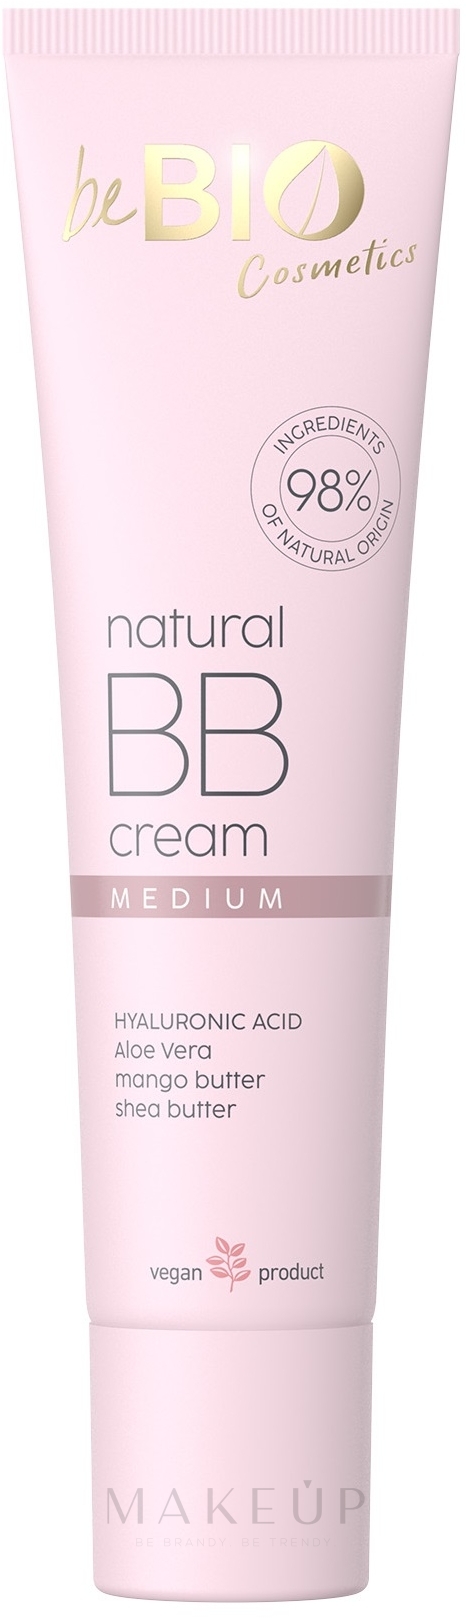 BB-Creme für das Gesicht - BeBio Natural BB Cream — Bild Medium